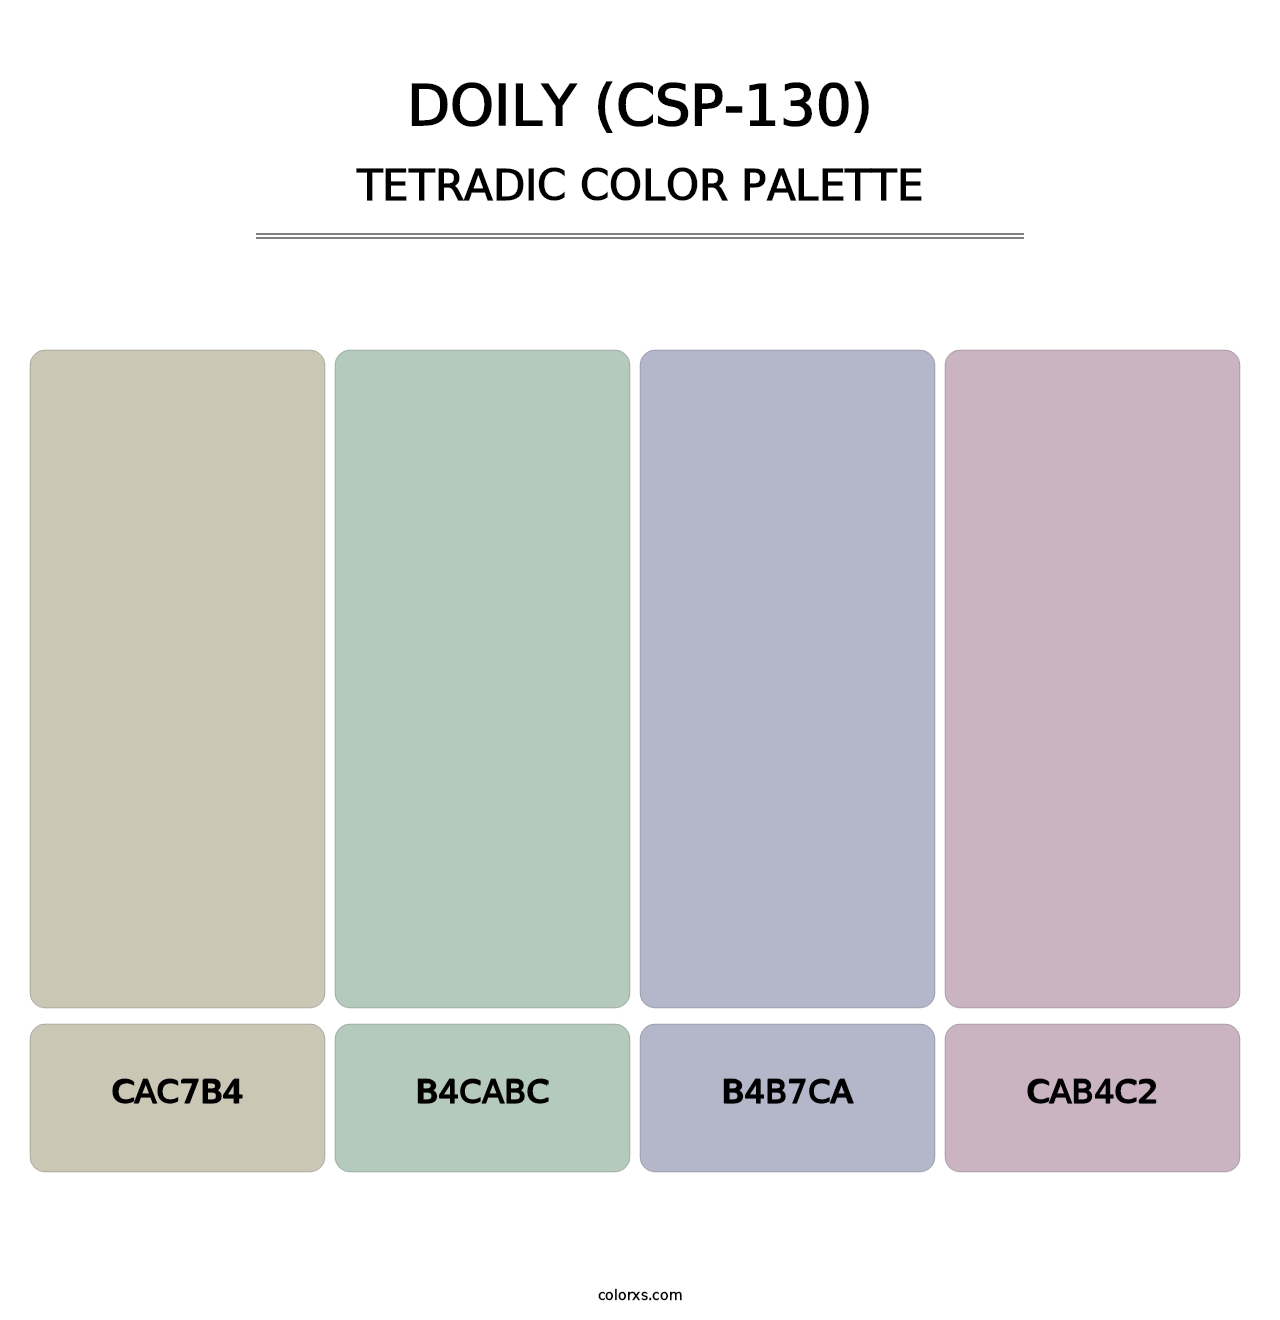 Doily (CSP-130) - Tetradic Color Palette